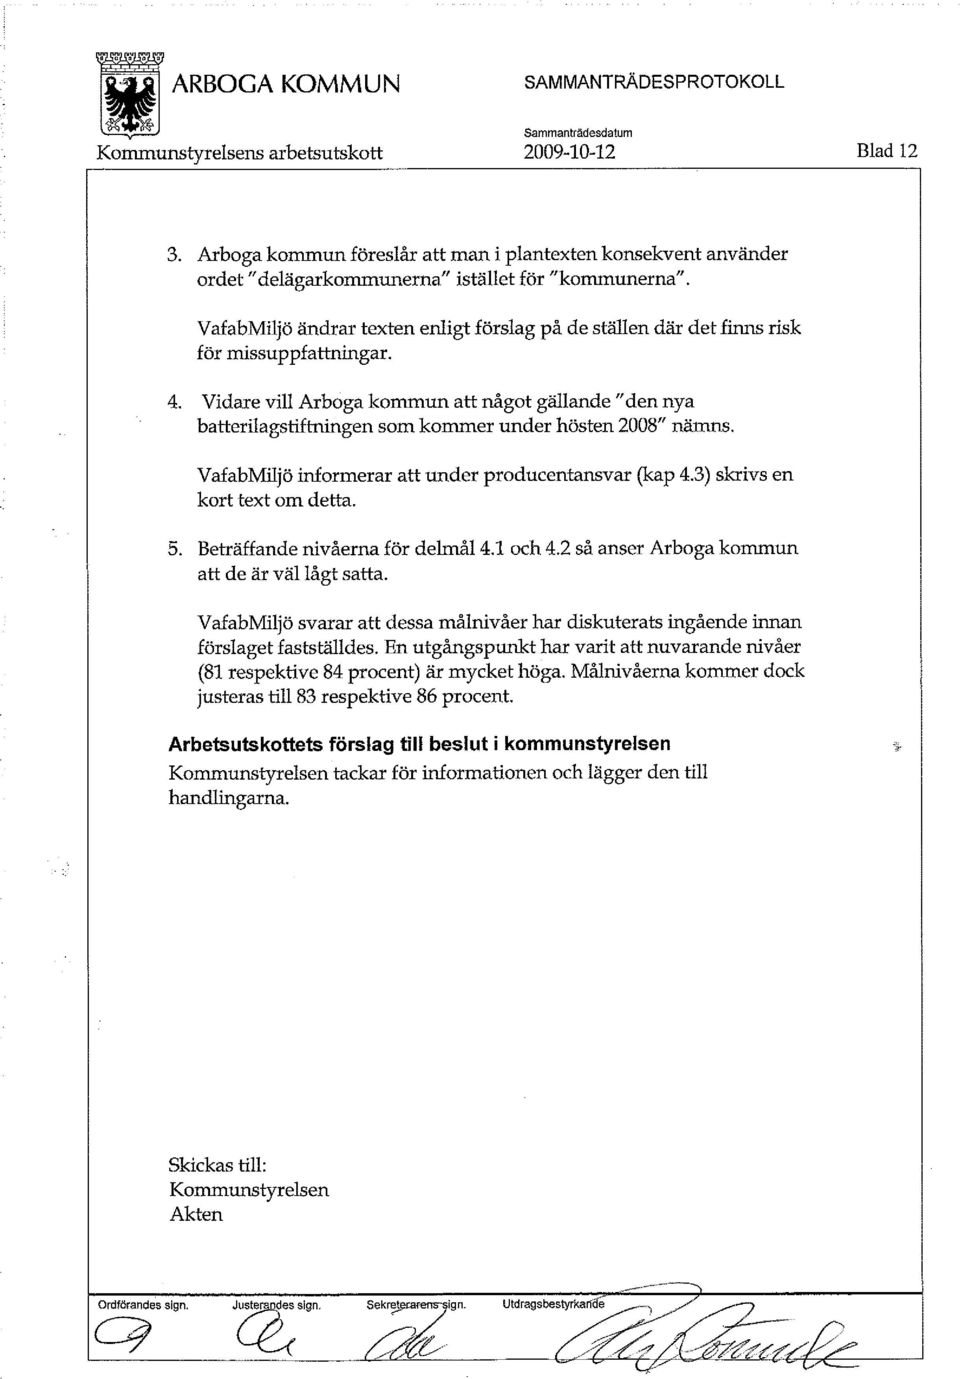 Vidare vill Arboga kommun attnågot gällande "den nya batterilagstiftningen som kommer under hösten 2008 " nämns. VafabMiljö informerar att under producentansvar (kap 4.3) skrivs en kort text om detta.